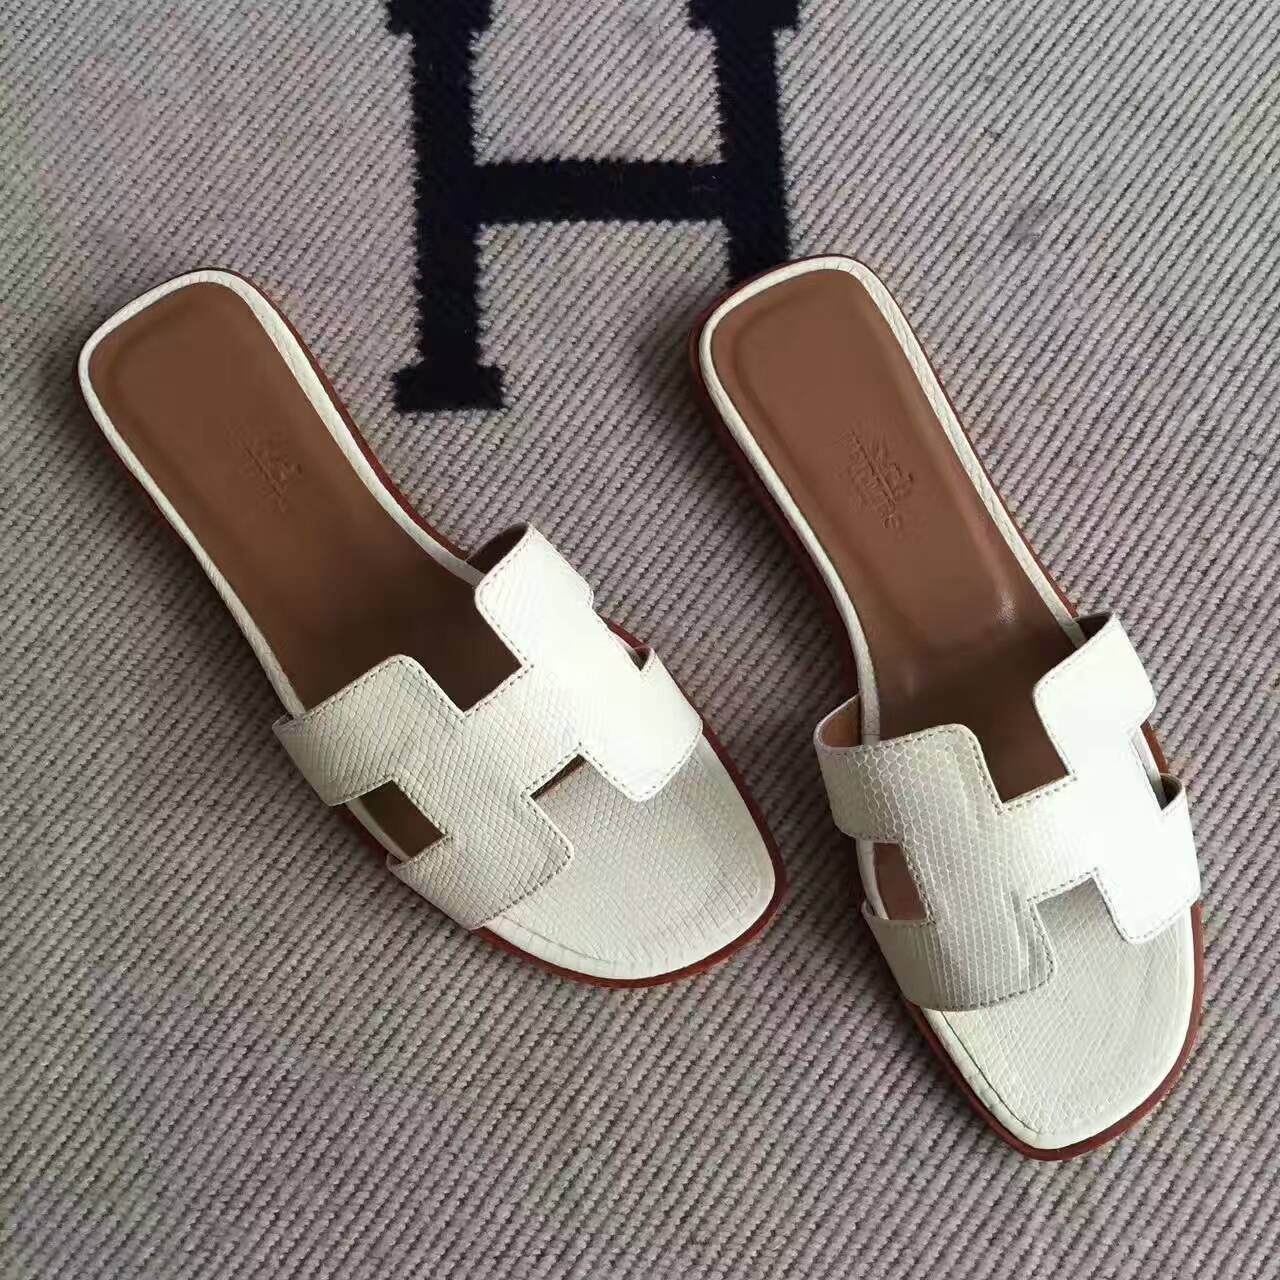 white hermes slippers